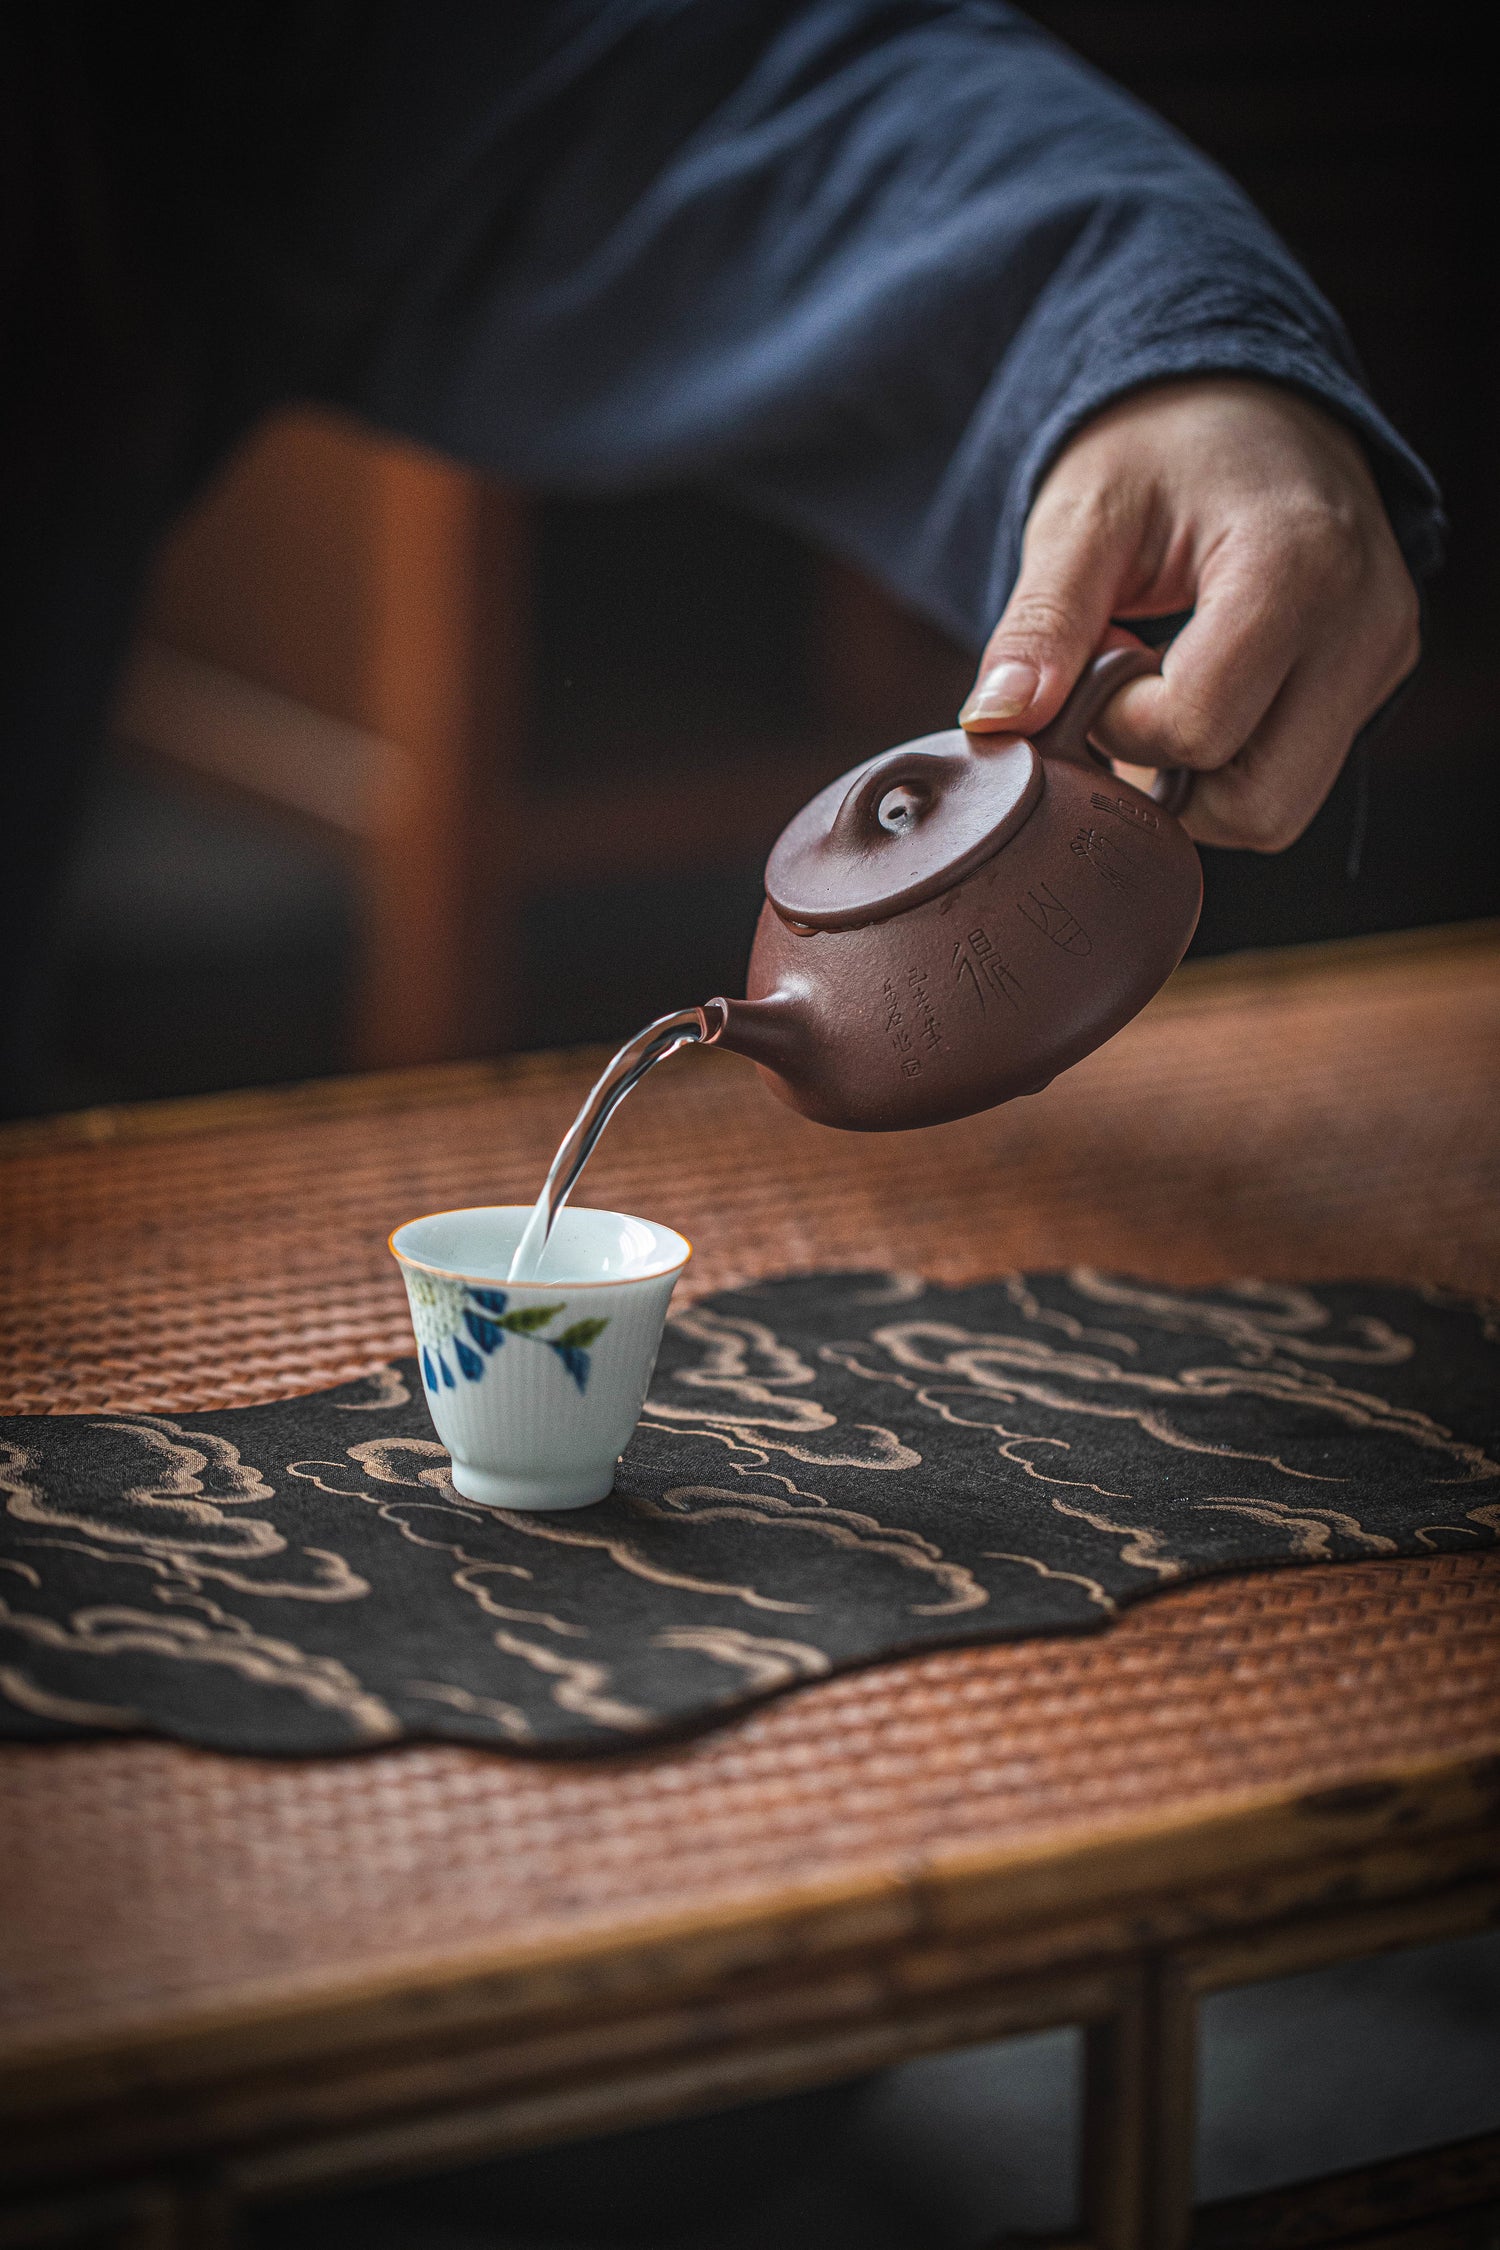 Ein asiatisch wirkendes Bild, wo eine Person Tee aus einer Gußeisenkanne in einen kleinen Teebecher eingiesst. Der Teebecher steht auf einem Basttisch mit einer schönen Decke mit schwarzem Hintergrund und beige/goldenen Wolken